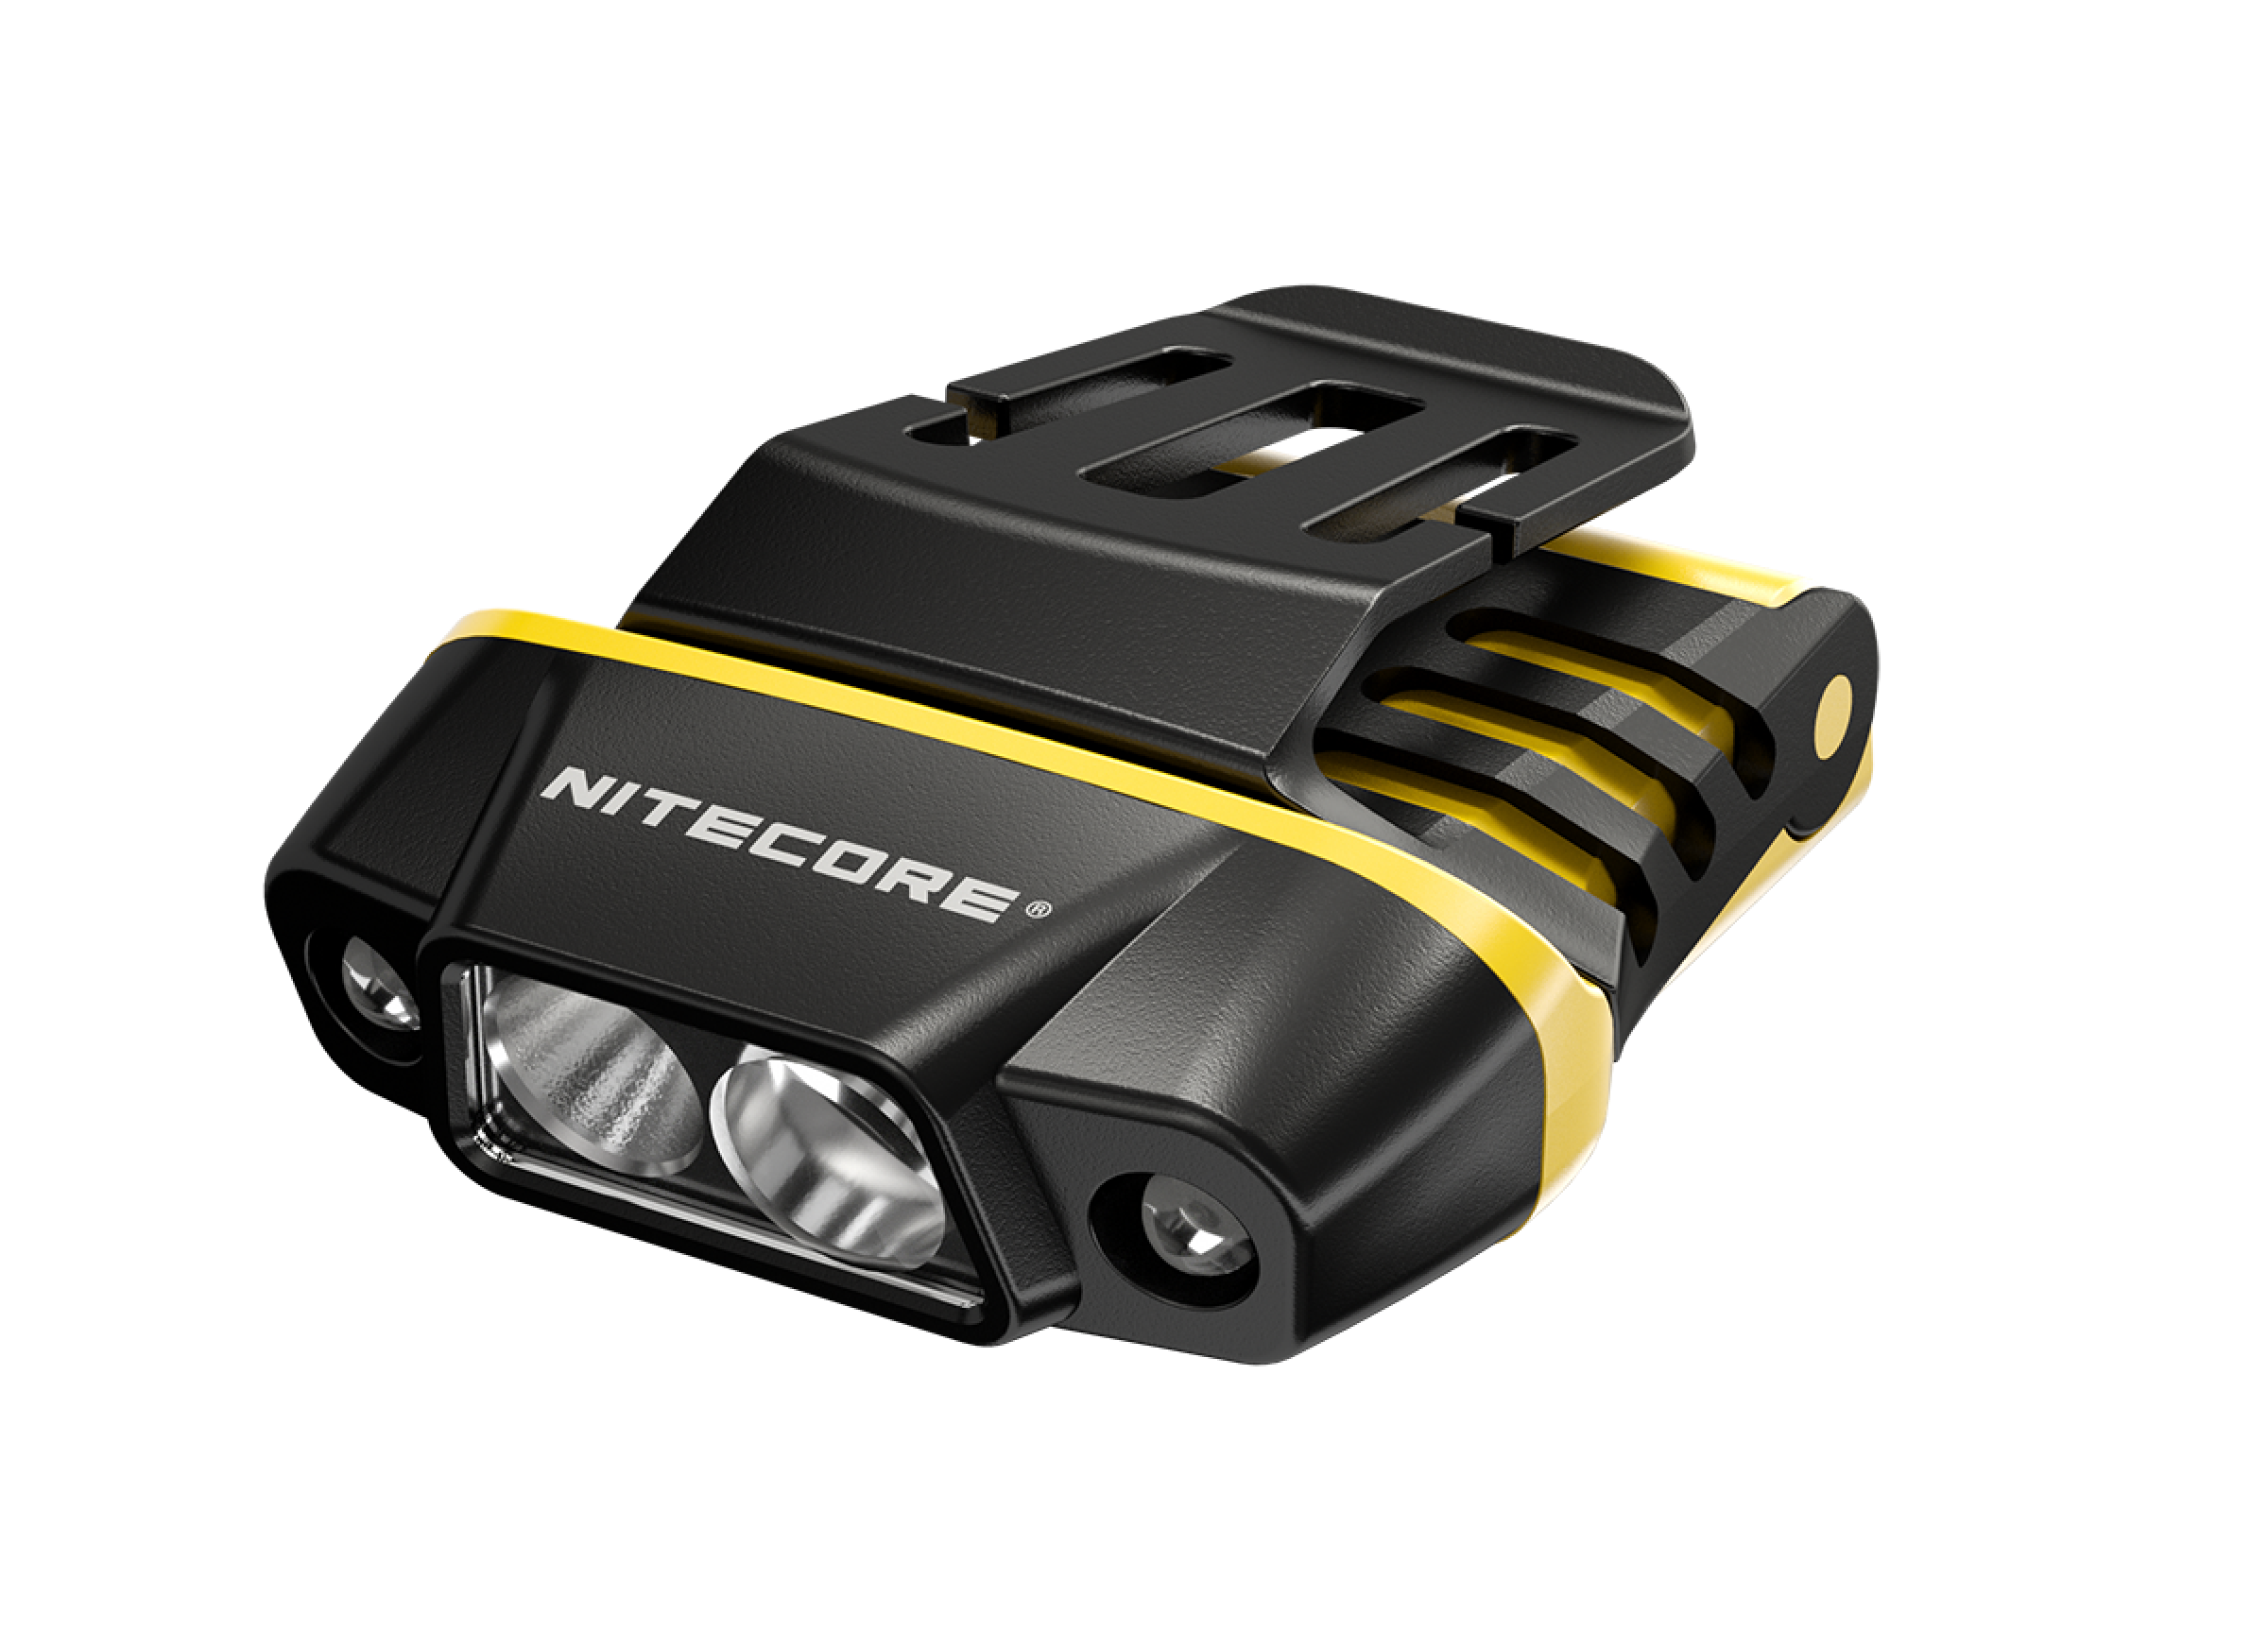 Nitecore NU11 - Clipleuchte mit IR-Sensor